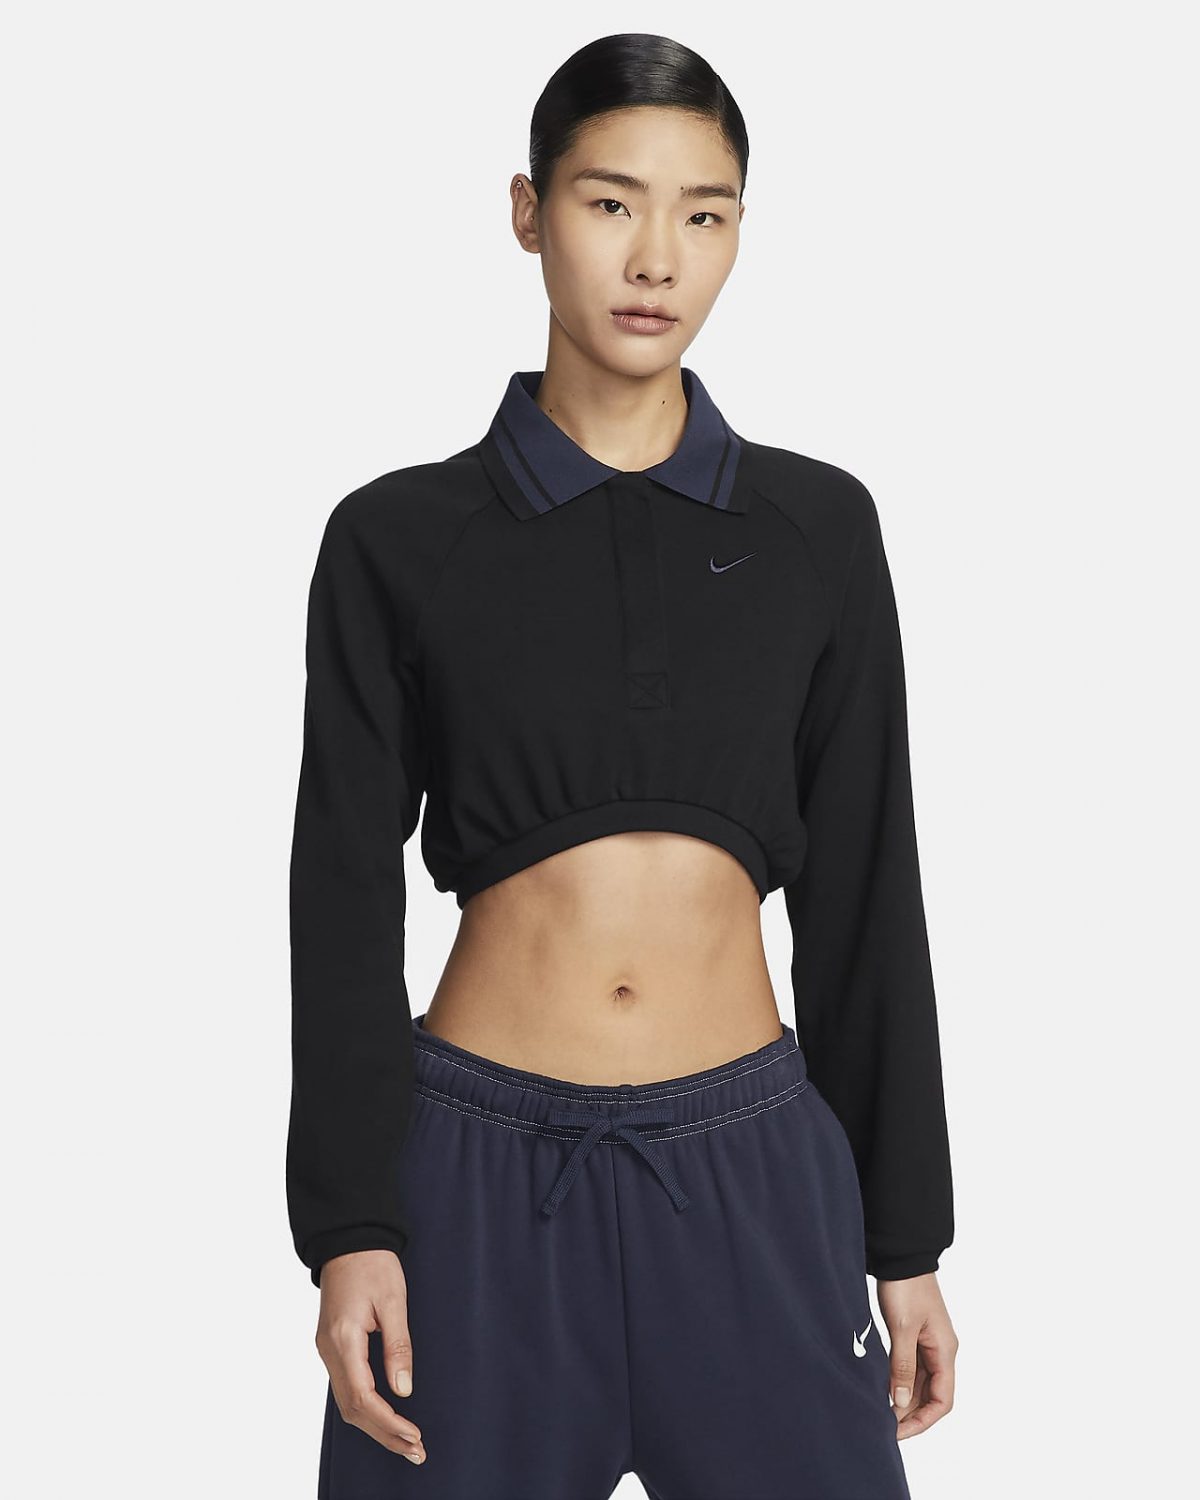 Женский топ Nike Sportswear Collection фото